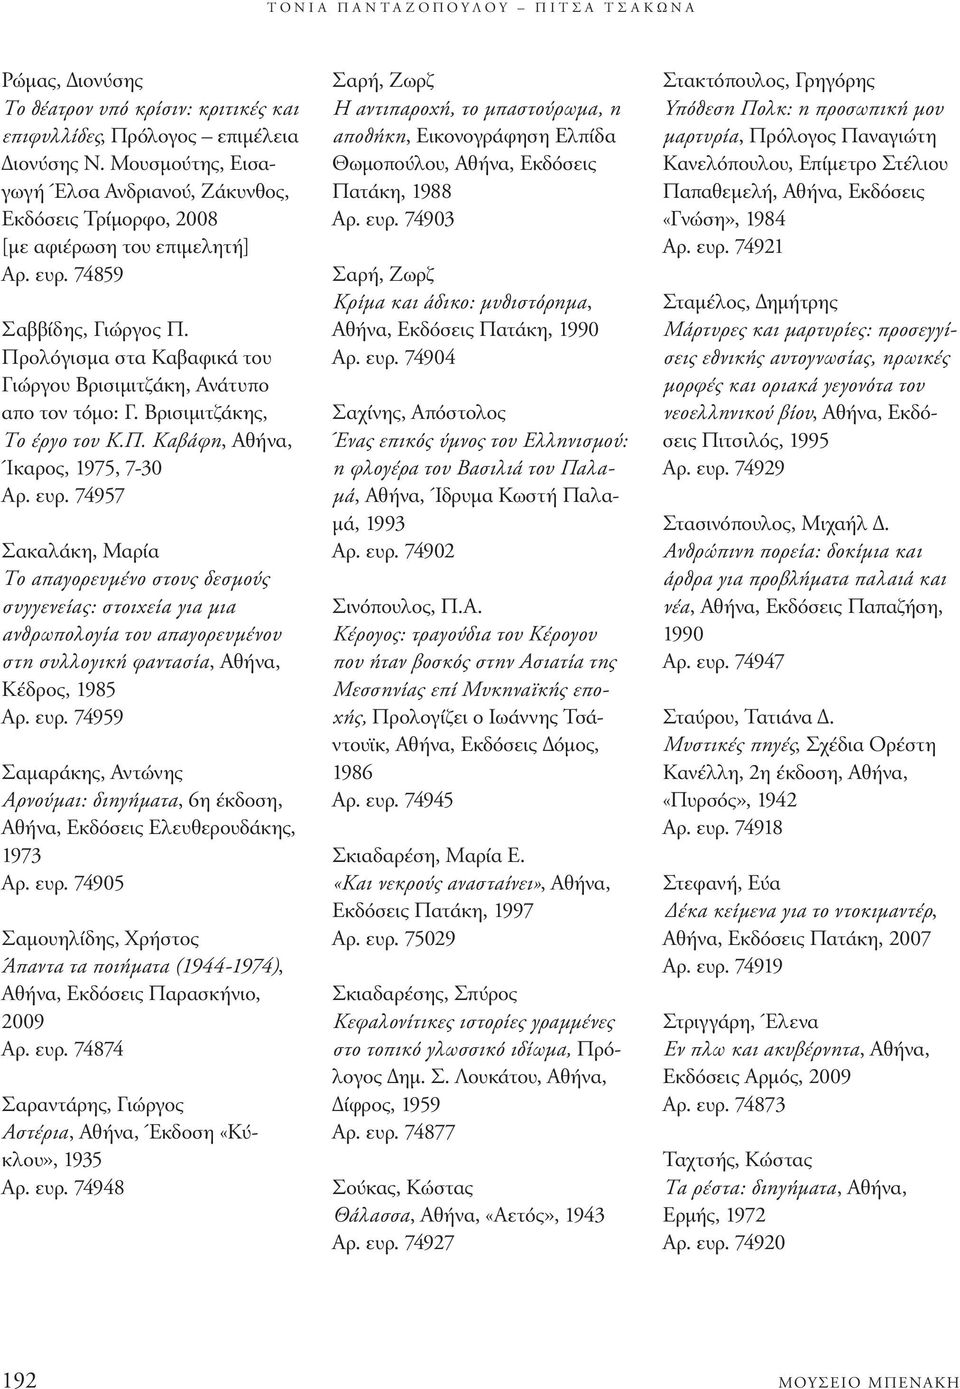 Προλόγισµα στα Καβαφικά του Γιώργου Βρισιµιτζάκη, Ανάτυπο απο τον τόµο: Γ. Βρισιµιτζάκης, Το έργο του Κ.Π. Καβάφη, Αθήνα, Ίκαρος, 1975, 7-30 Aρ. ευρ.